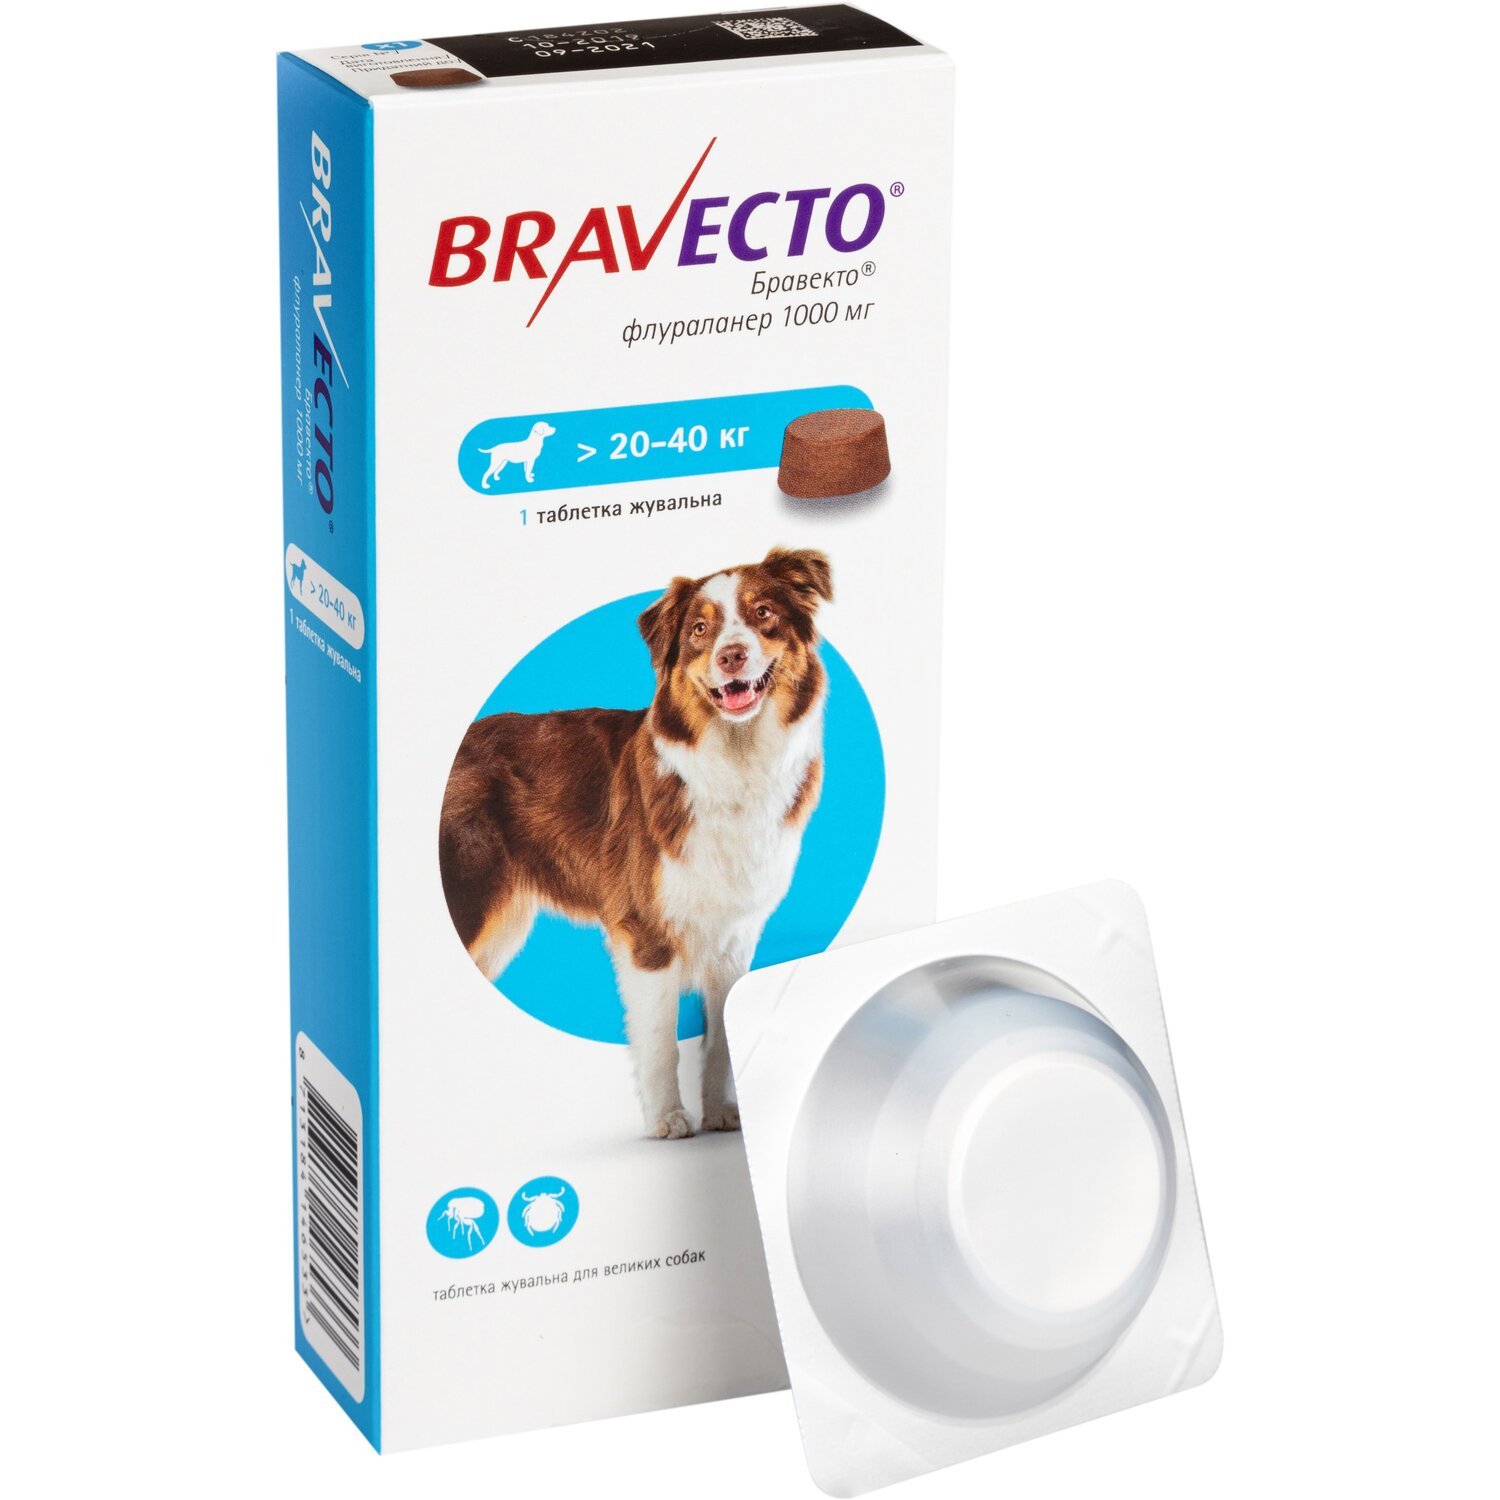 Жевательная таблетка Bravecto от блох и клещей для собак весом от 20 до 40 кг фото 